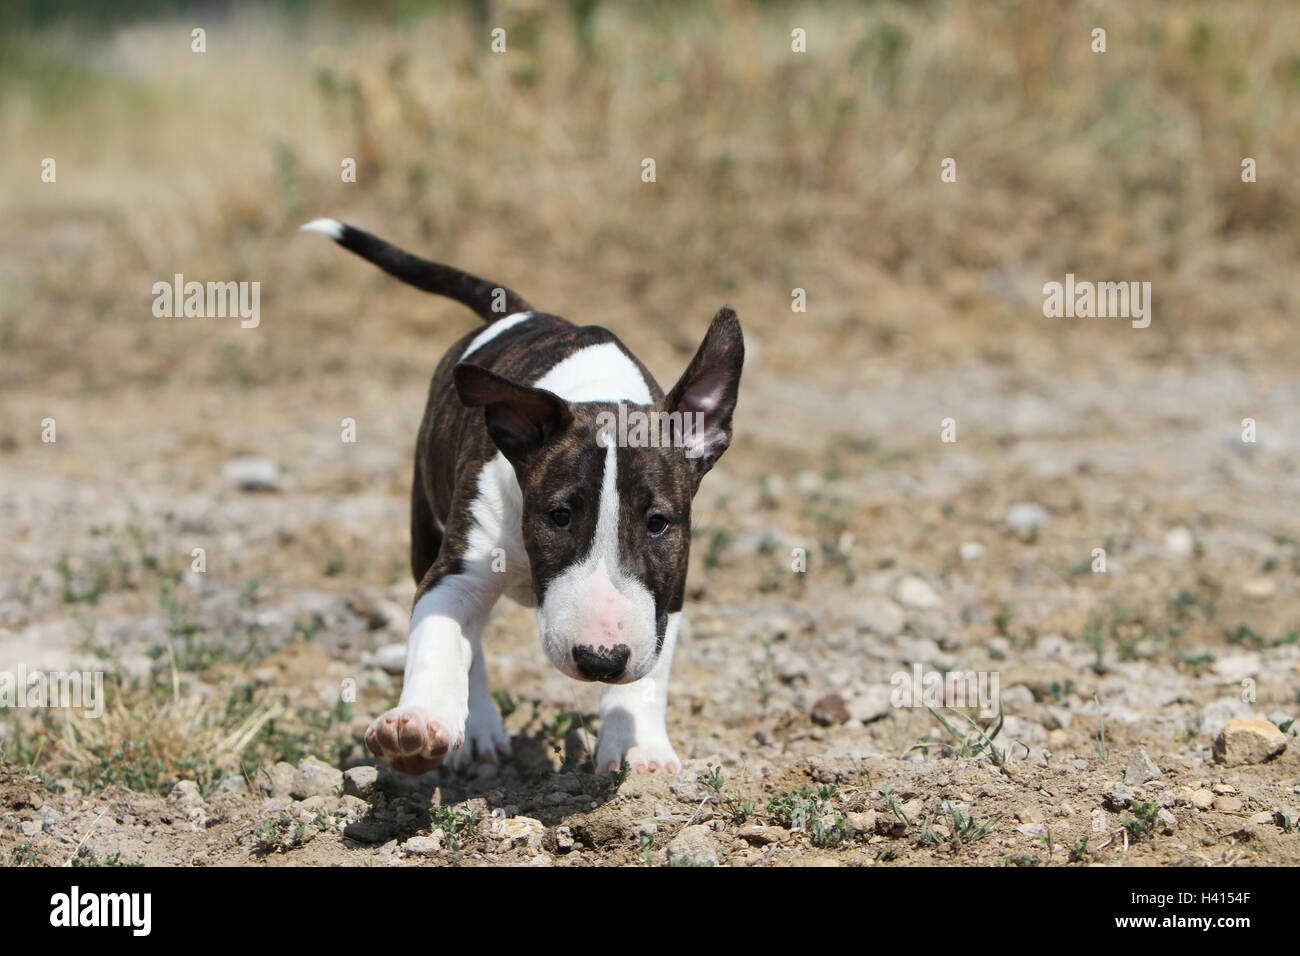 Dog Bull Terrier Anglais / bully / Gladator et tricolor brindle chiot lors de l'exécution de champ Banque D'Images